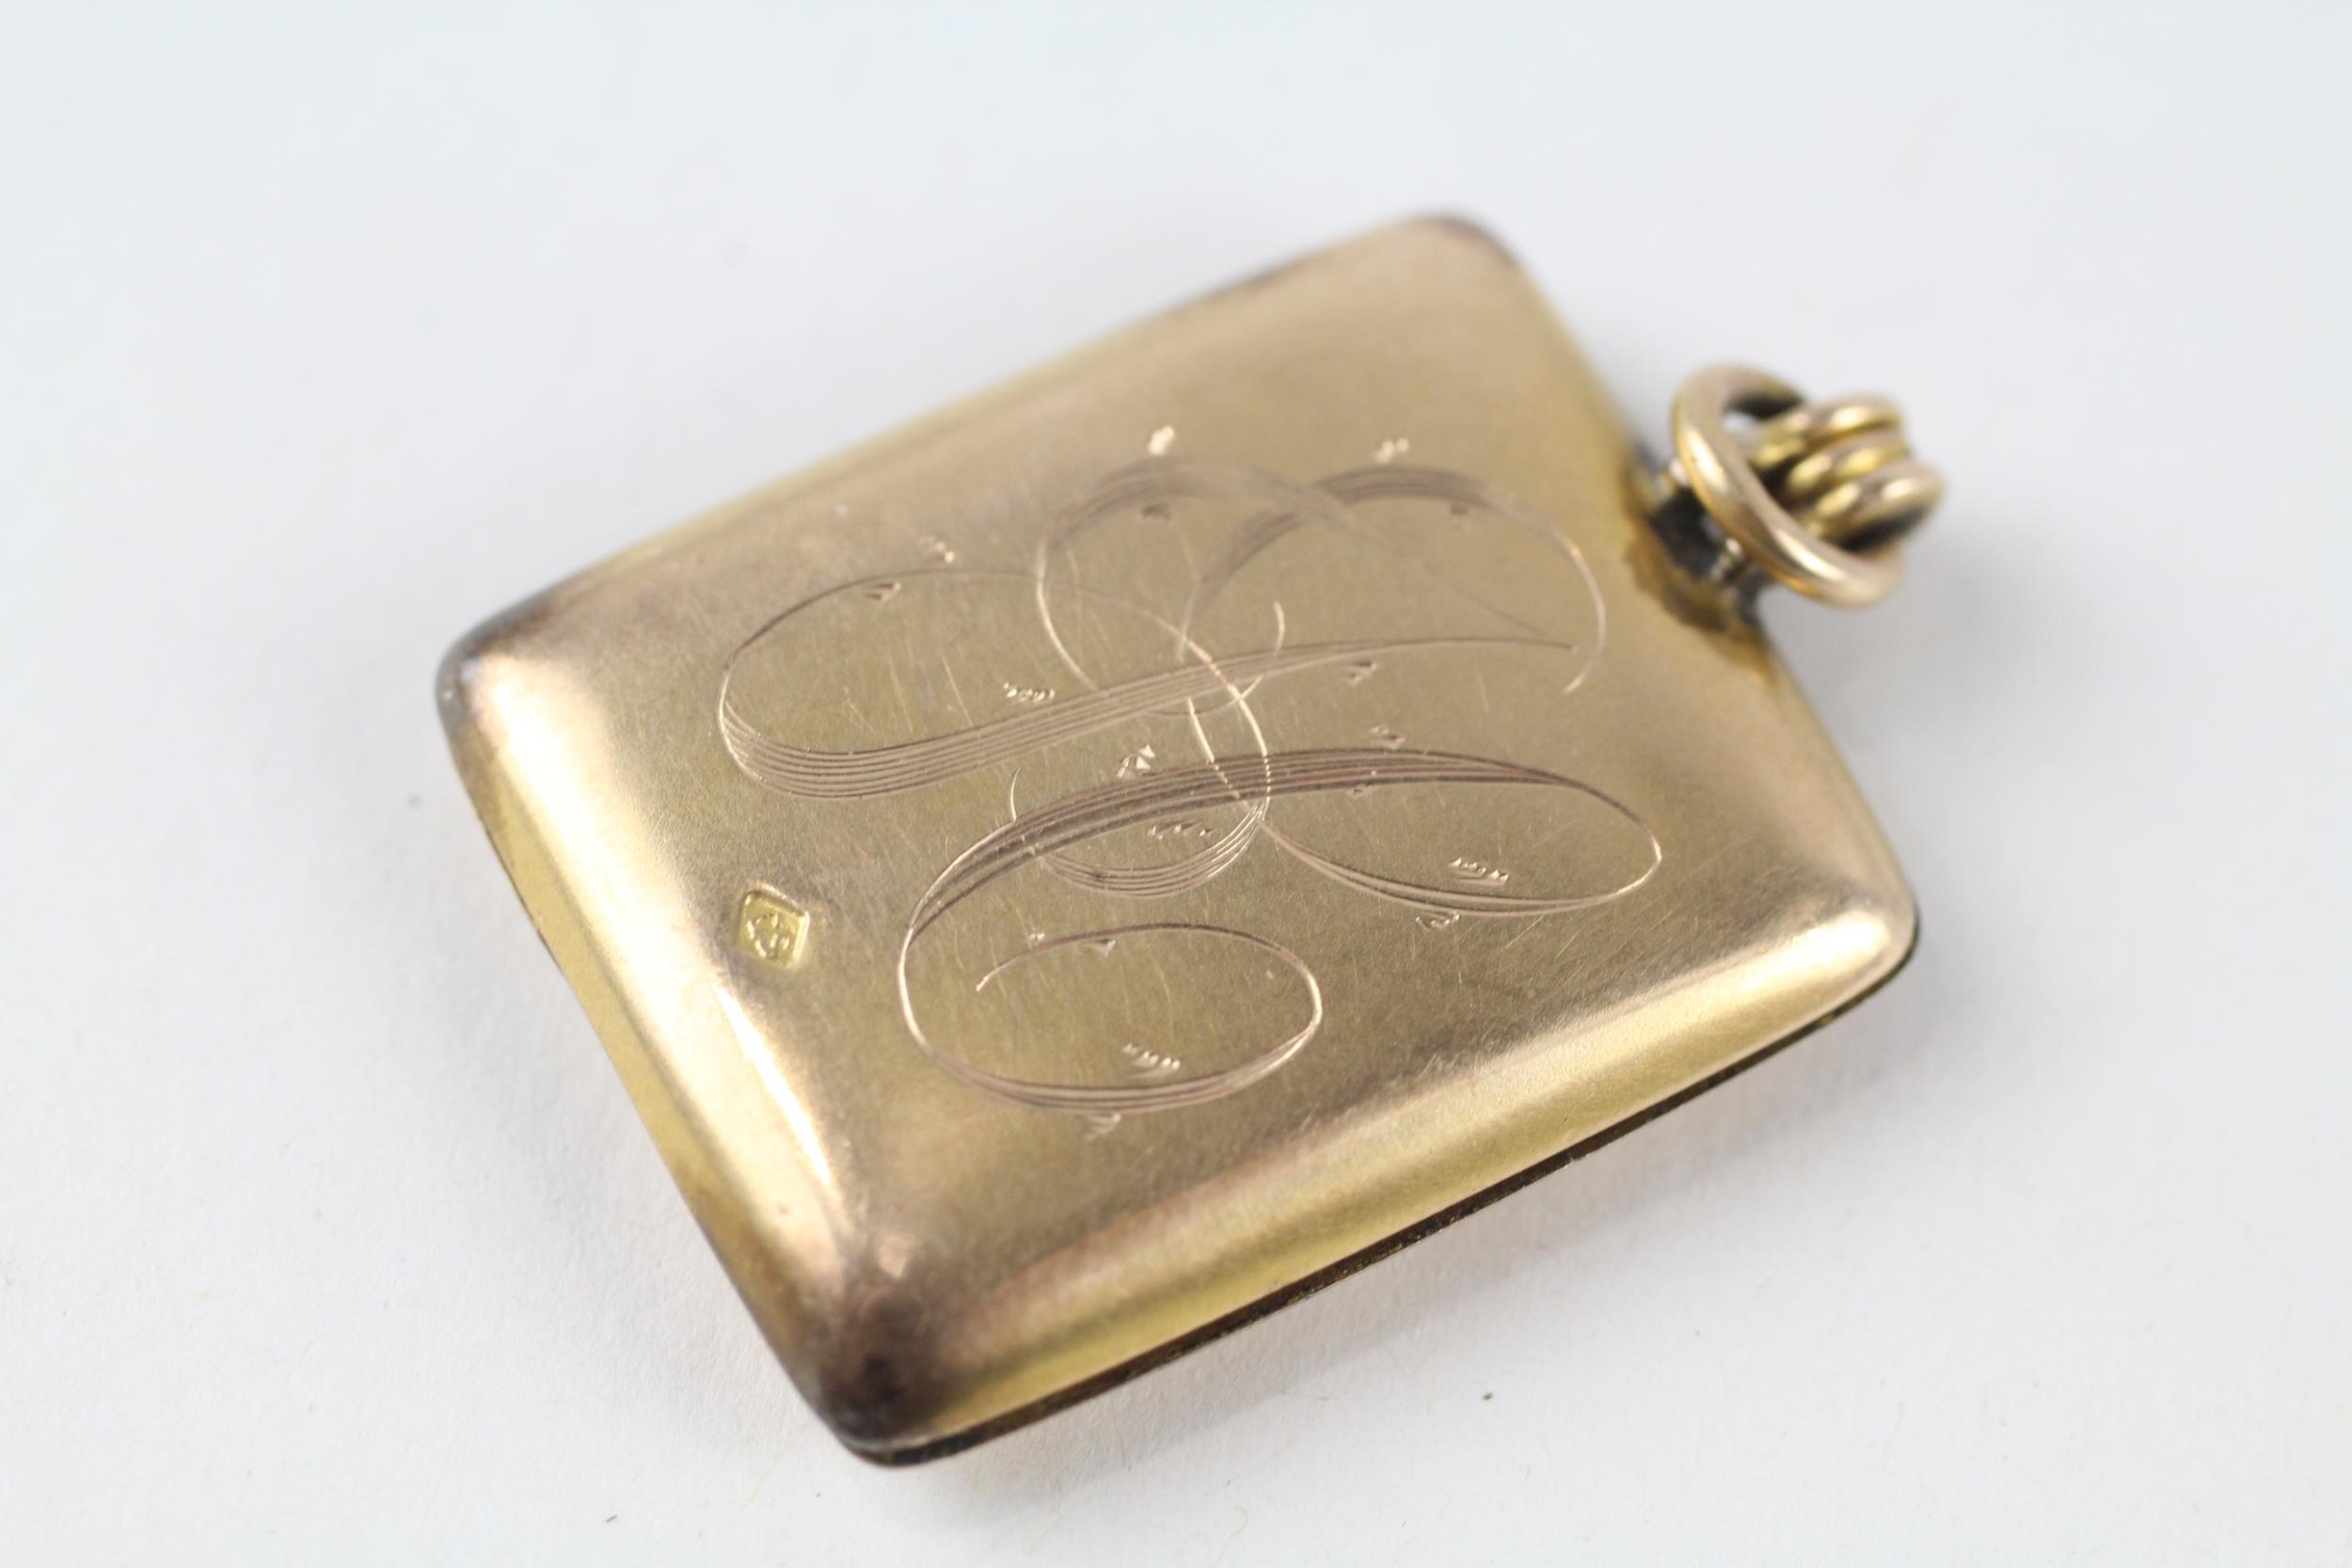 9ct gold back & front antique engraved locket (7.6g)